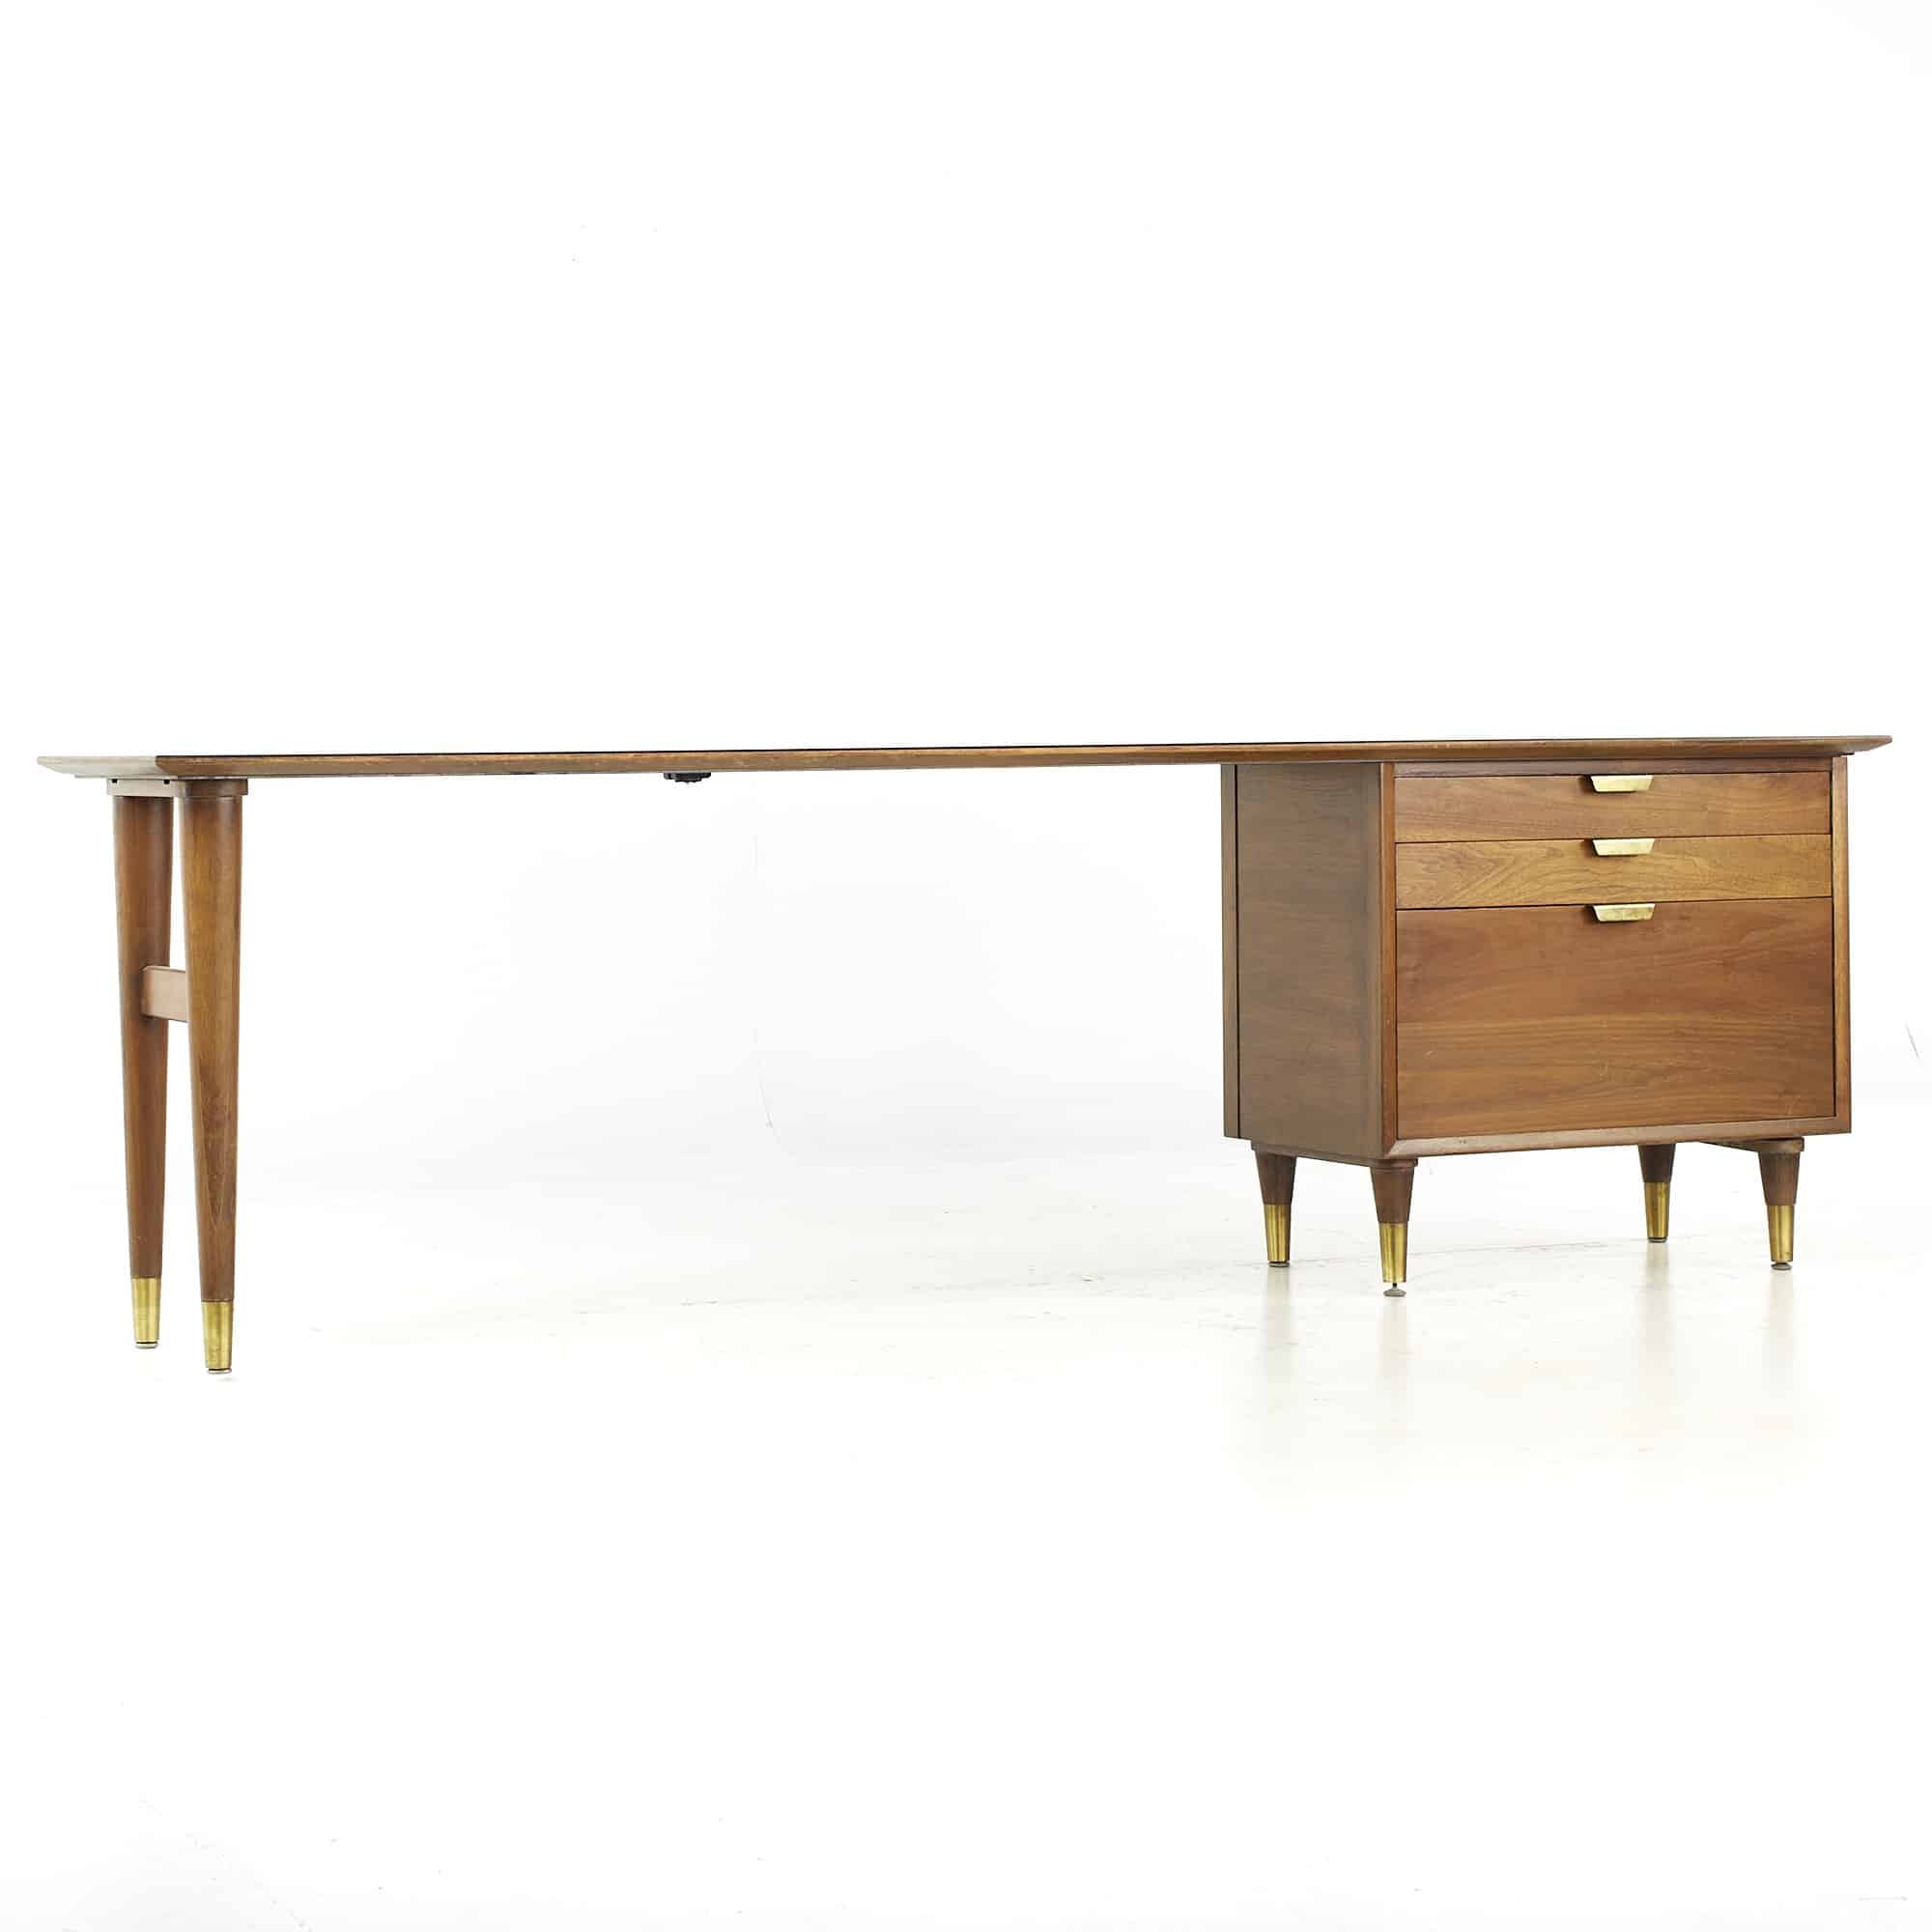 Standard Furniture Mid Century Walnut and Brass Desk Credenza